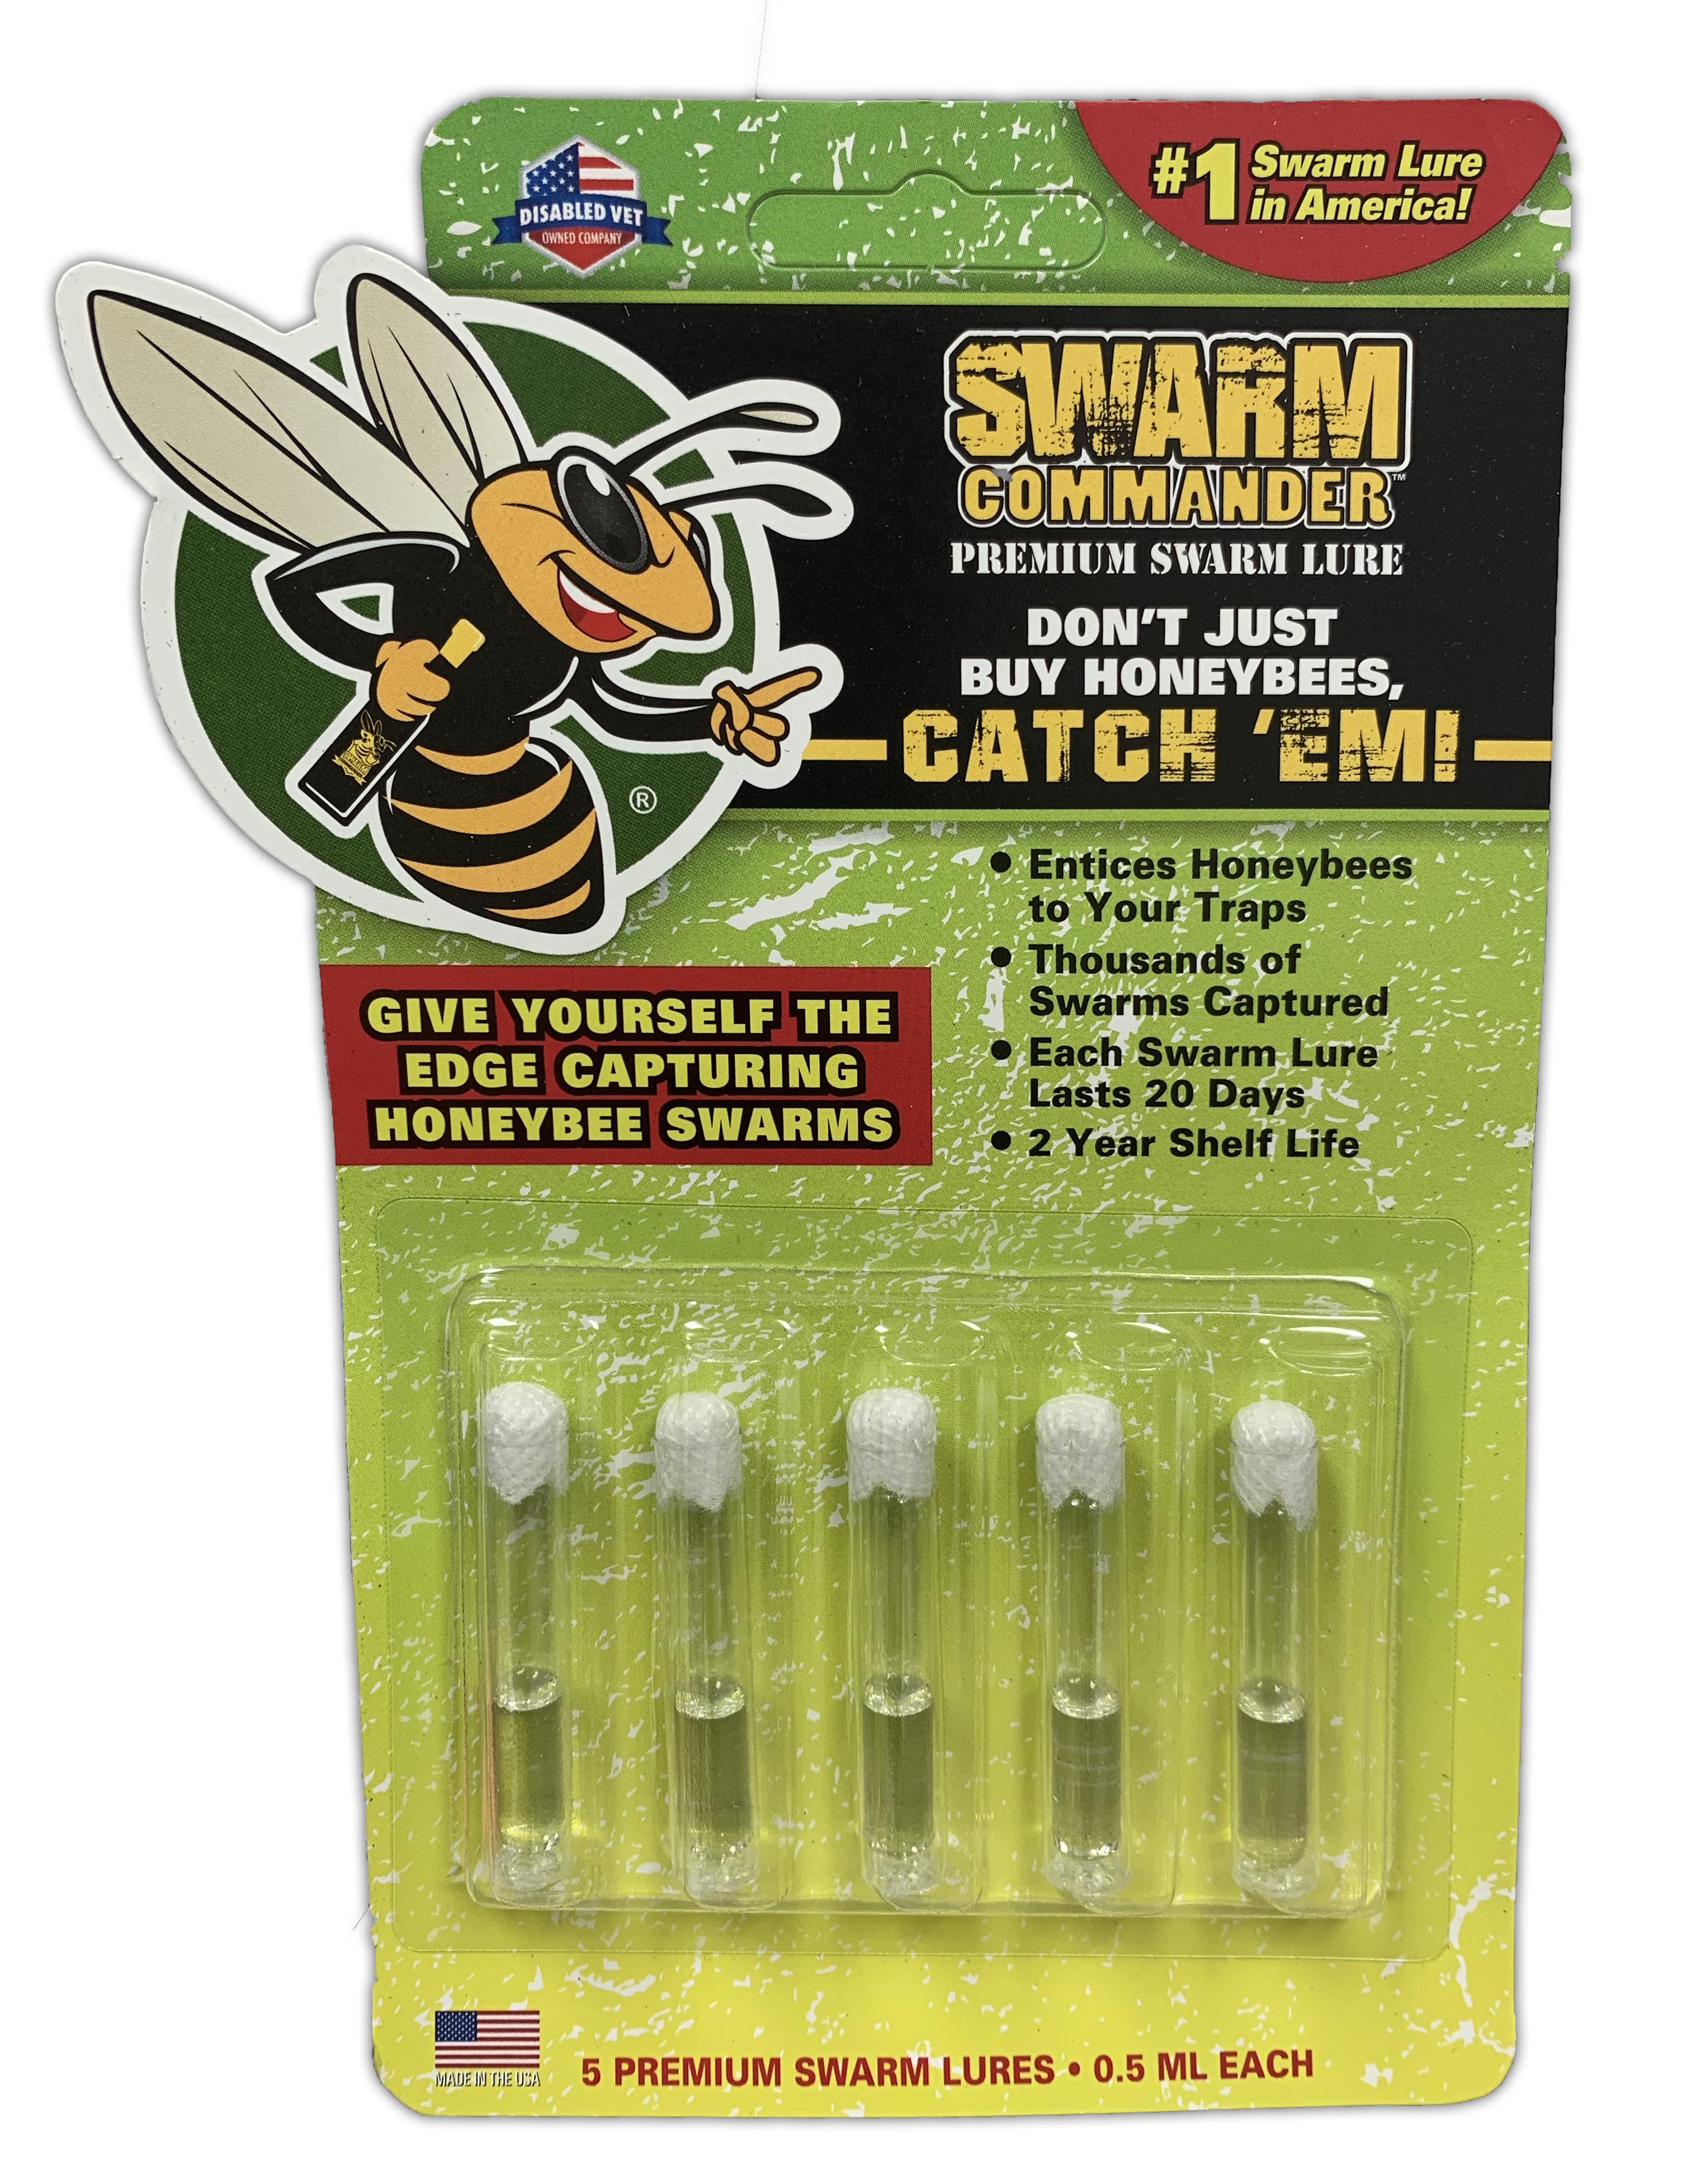 Swarm Commander Premium Swarm Lure - Crush Vials 5 Pack